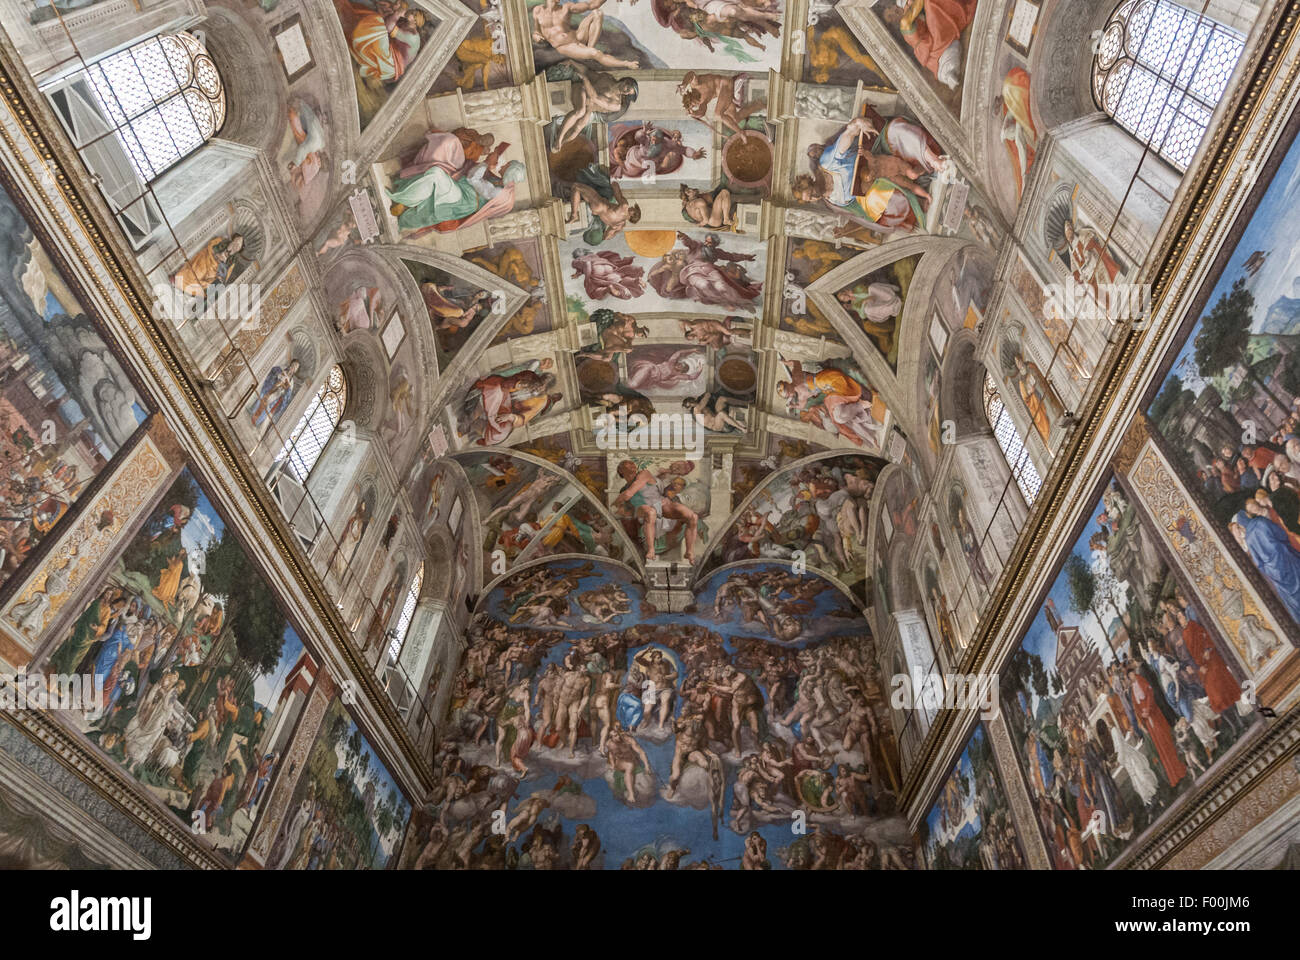 El techo de la Capilla Sixtina, pintada por Miguel Ángel. Los Museos del Vaticano, Ciudad del Vaticano, Roma, Italia Foto de stock